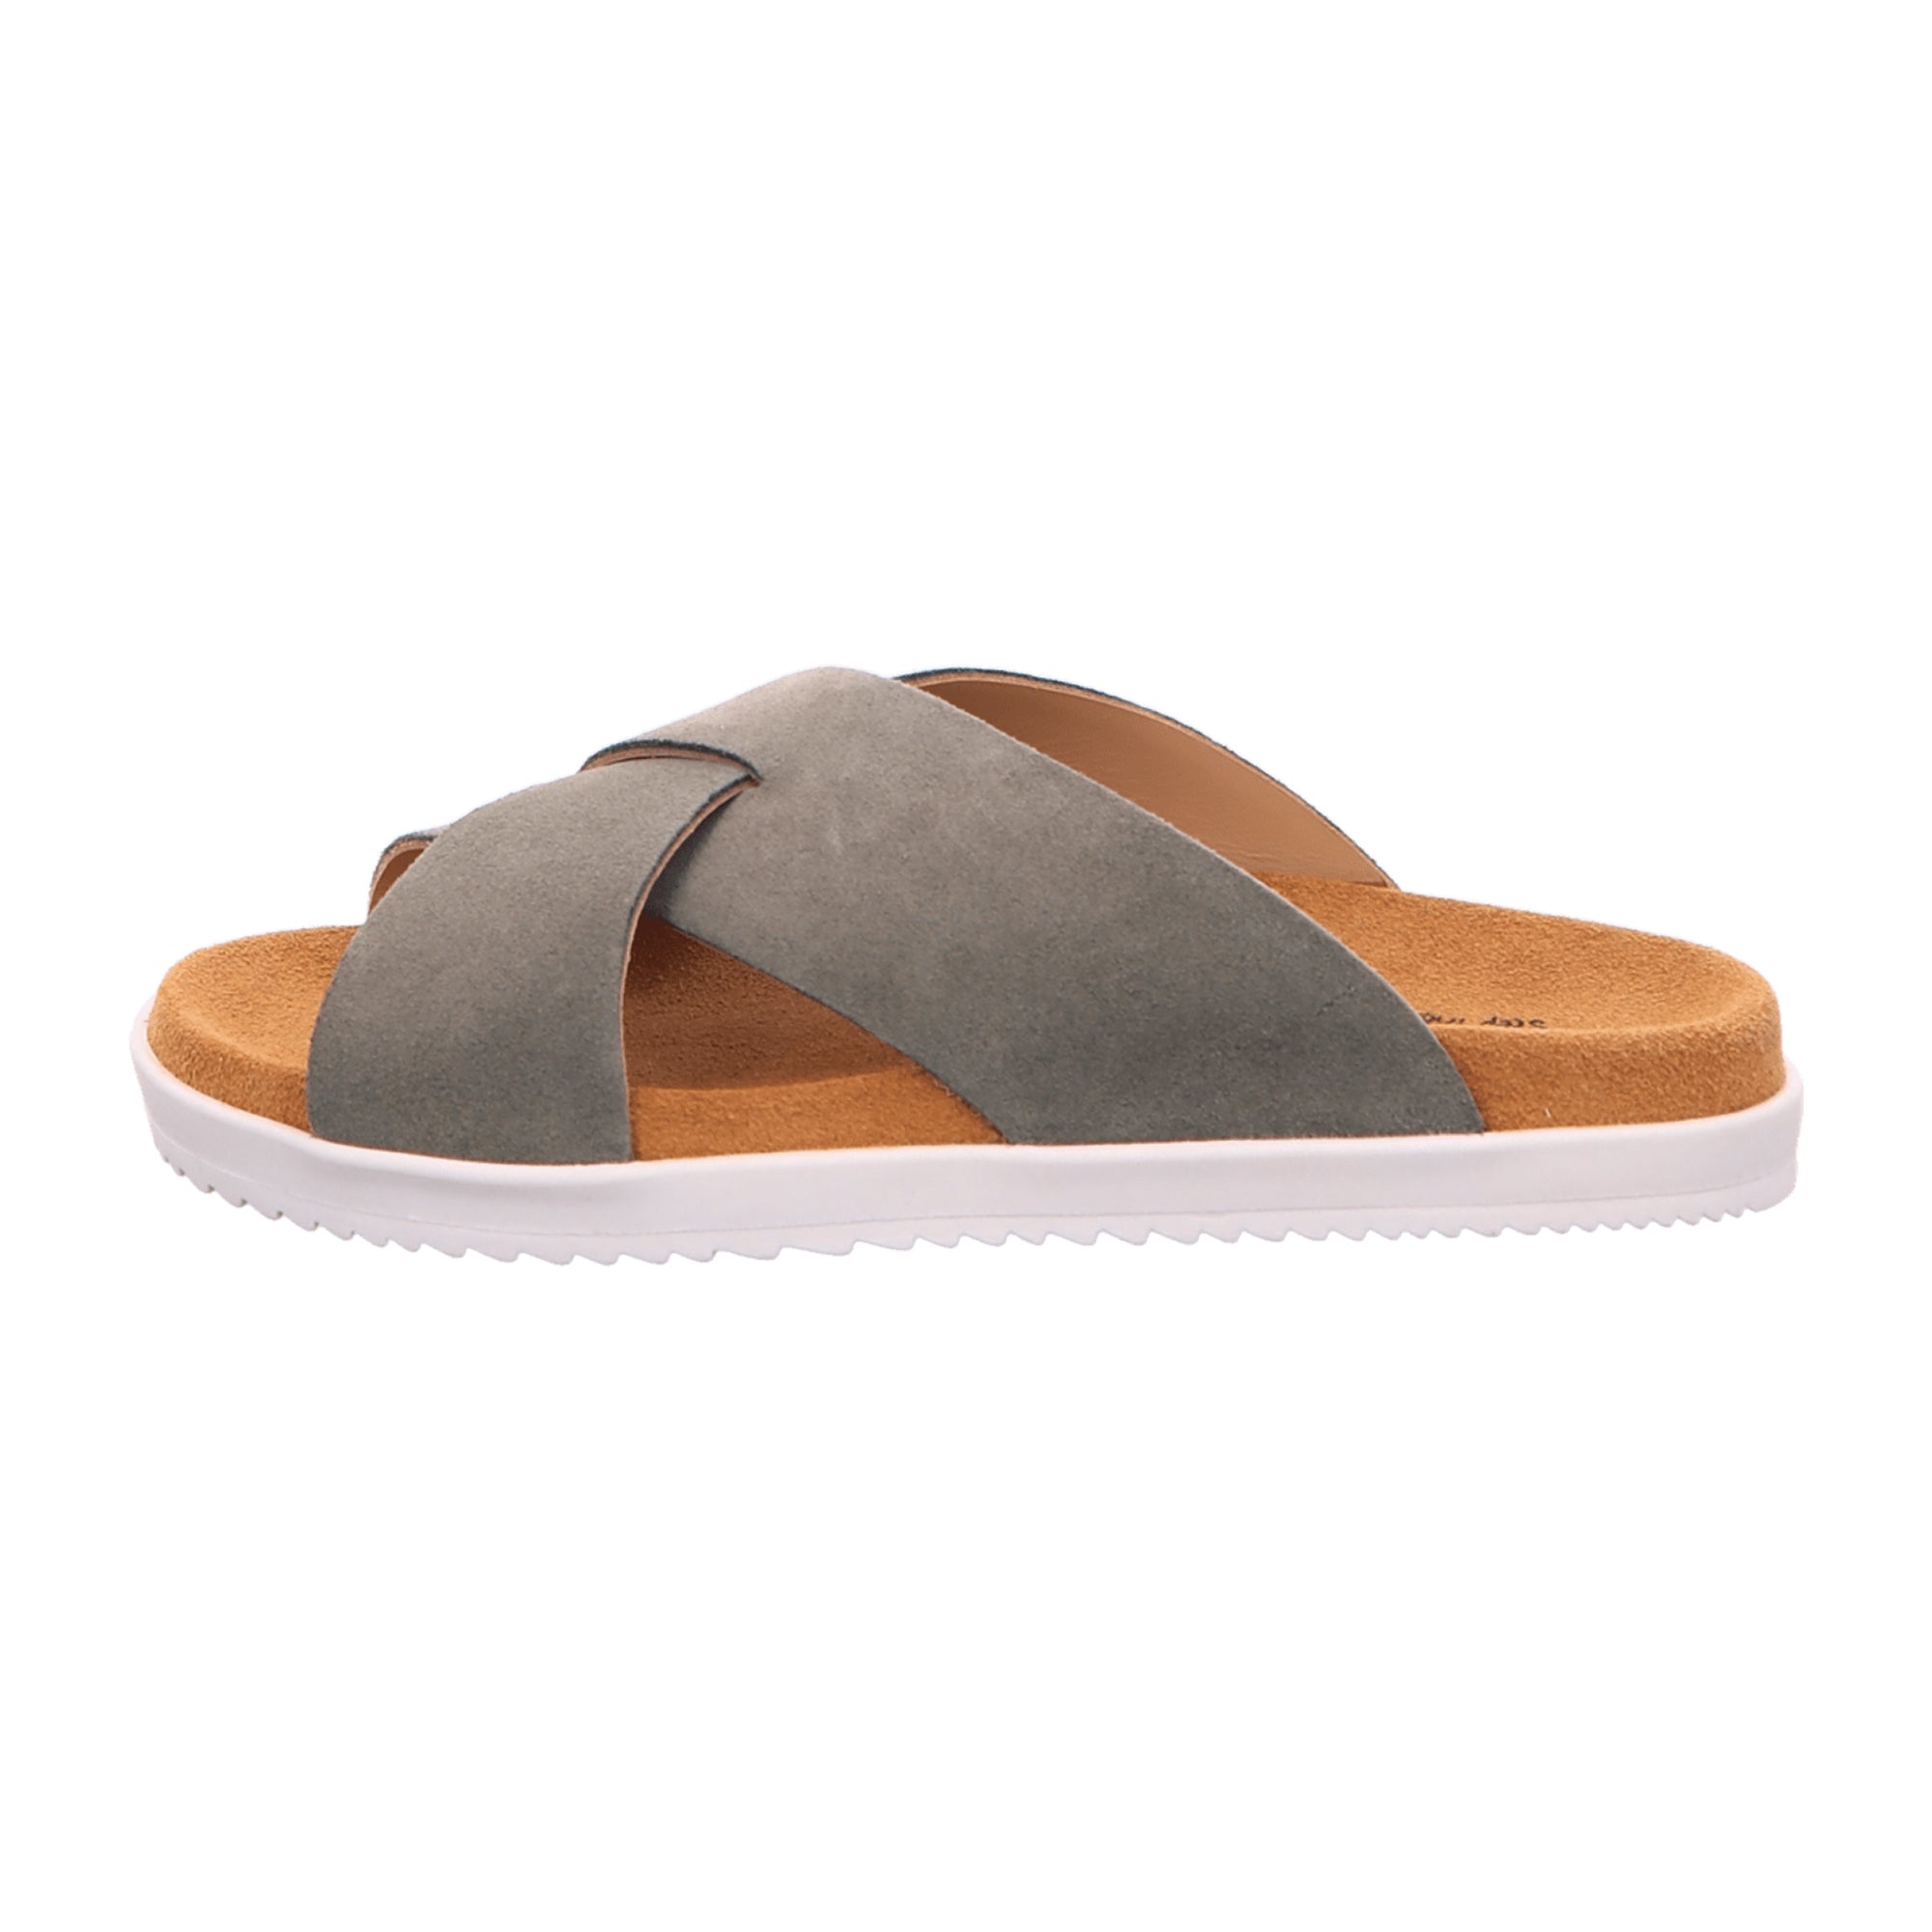 Haflinger Sienna Nubuck Summer Slides for Women - Stylish Khaki Comfort Sandals